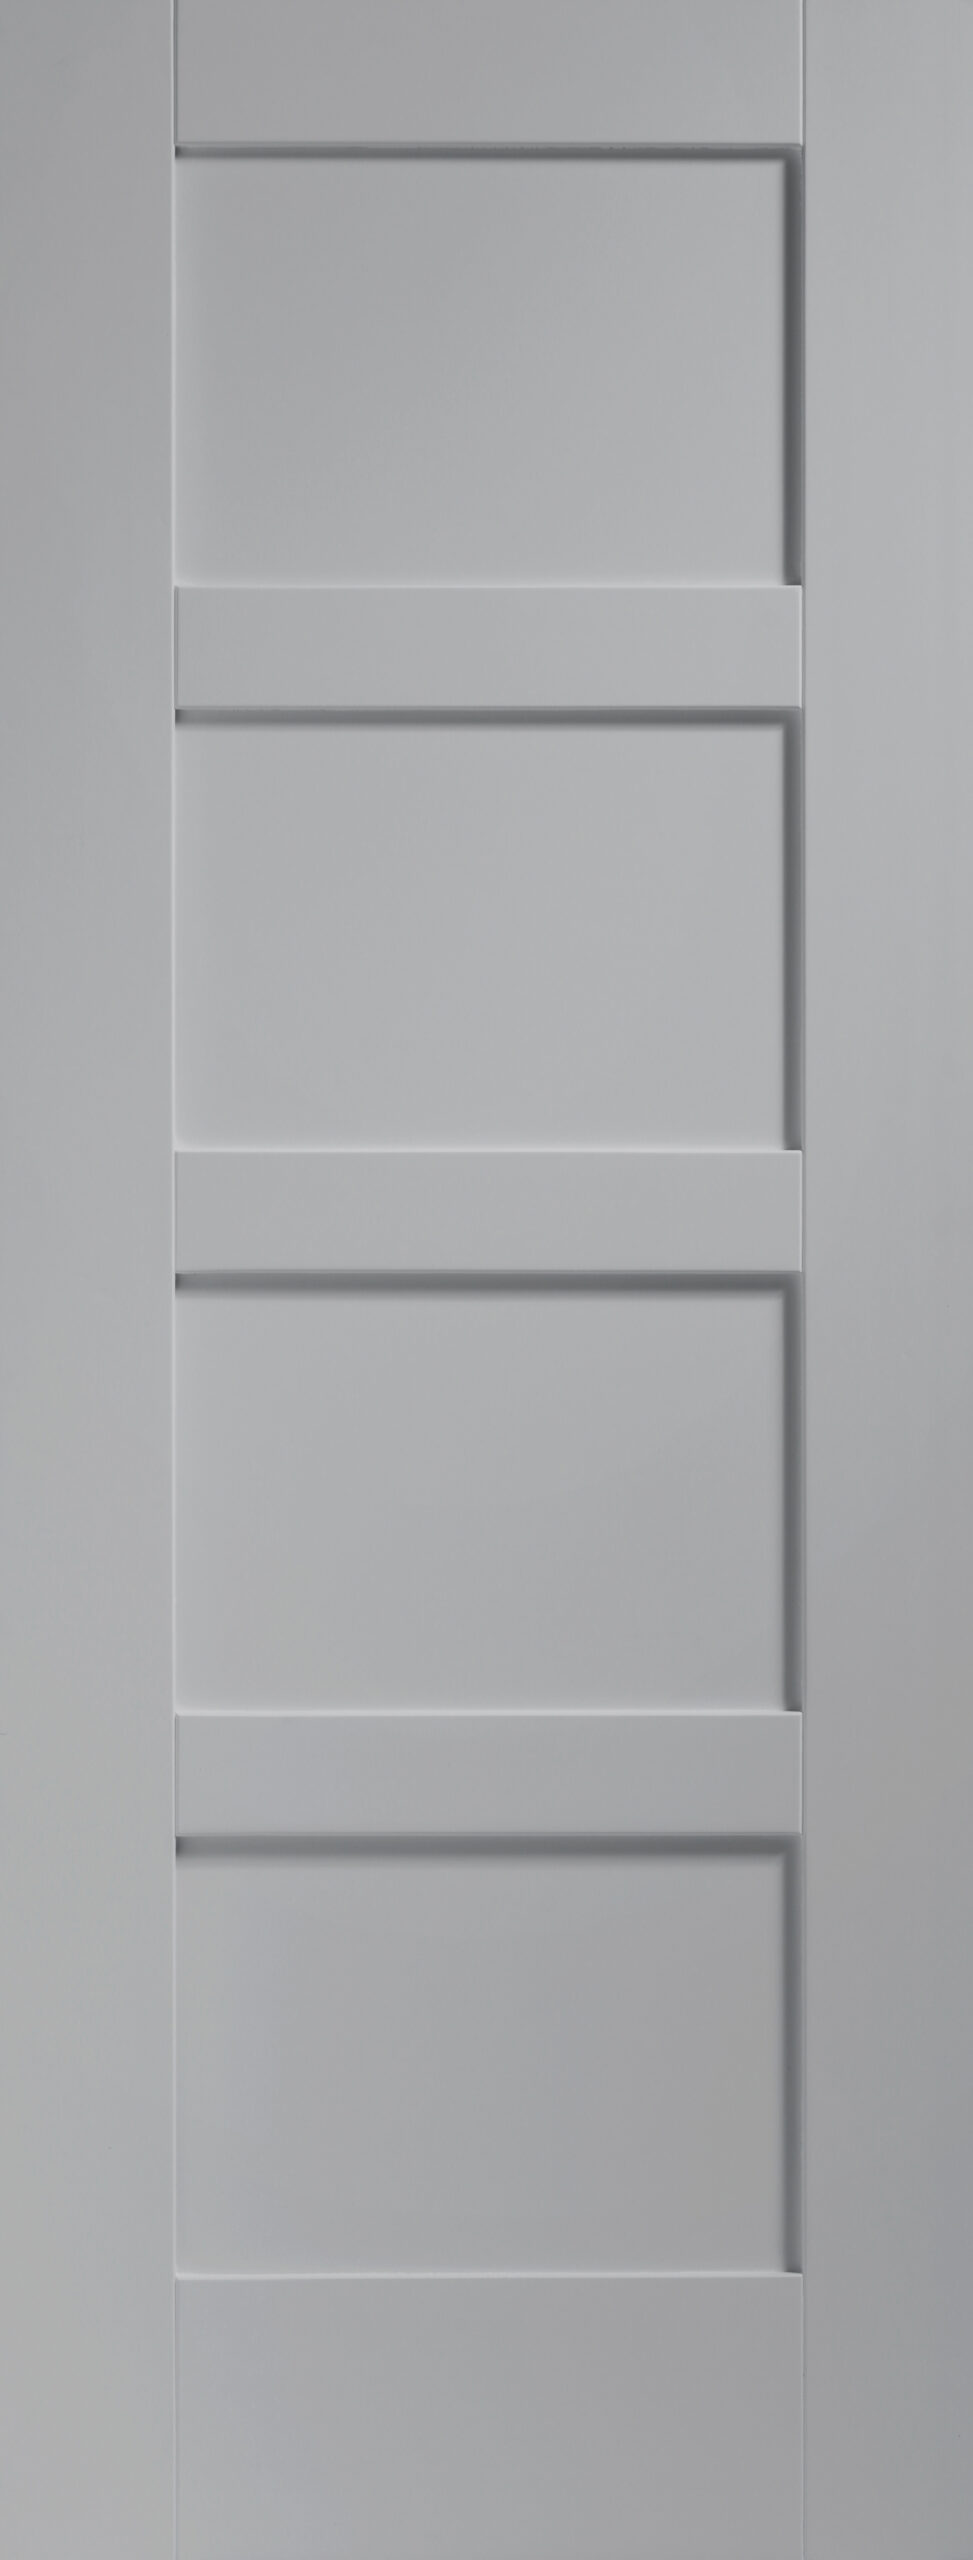 Shaker 4 Panel Internal White Primed Door – Storm, 2040 x 726 x 40 mm